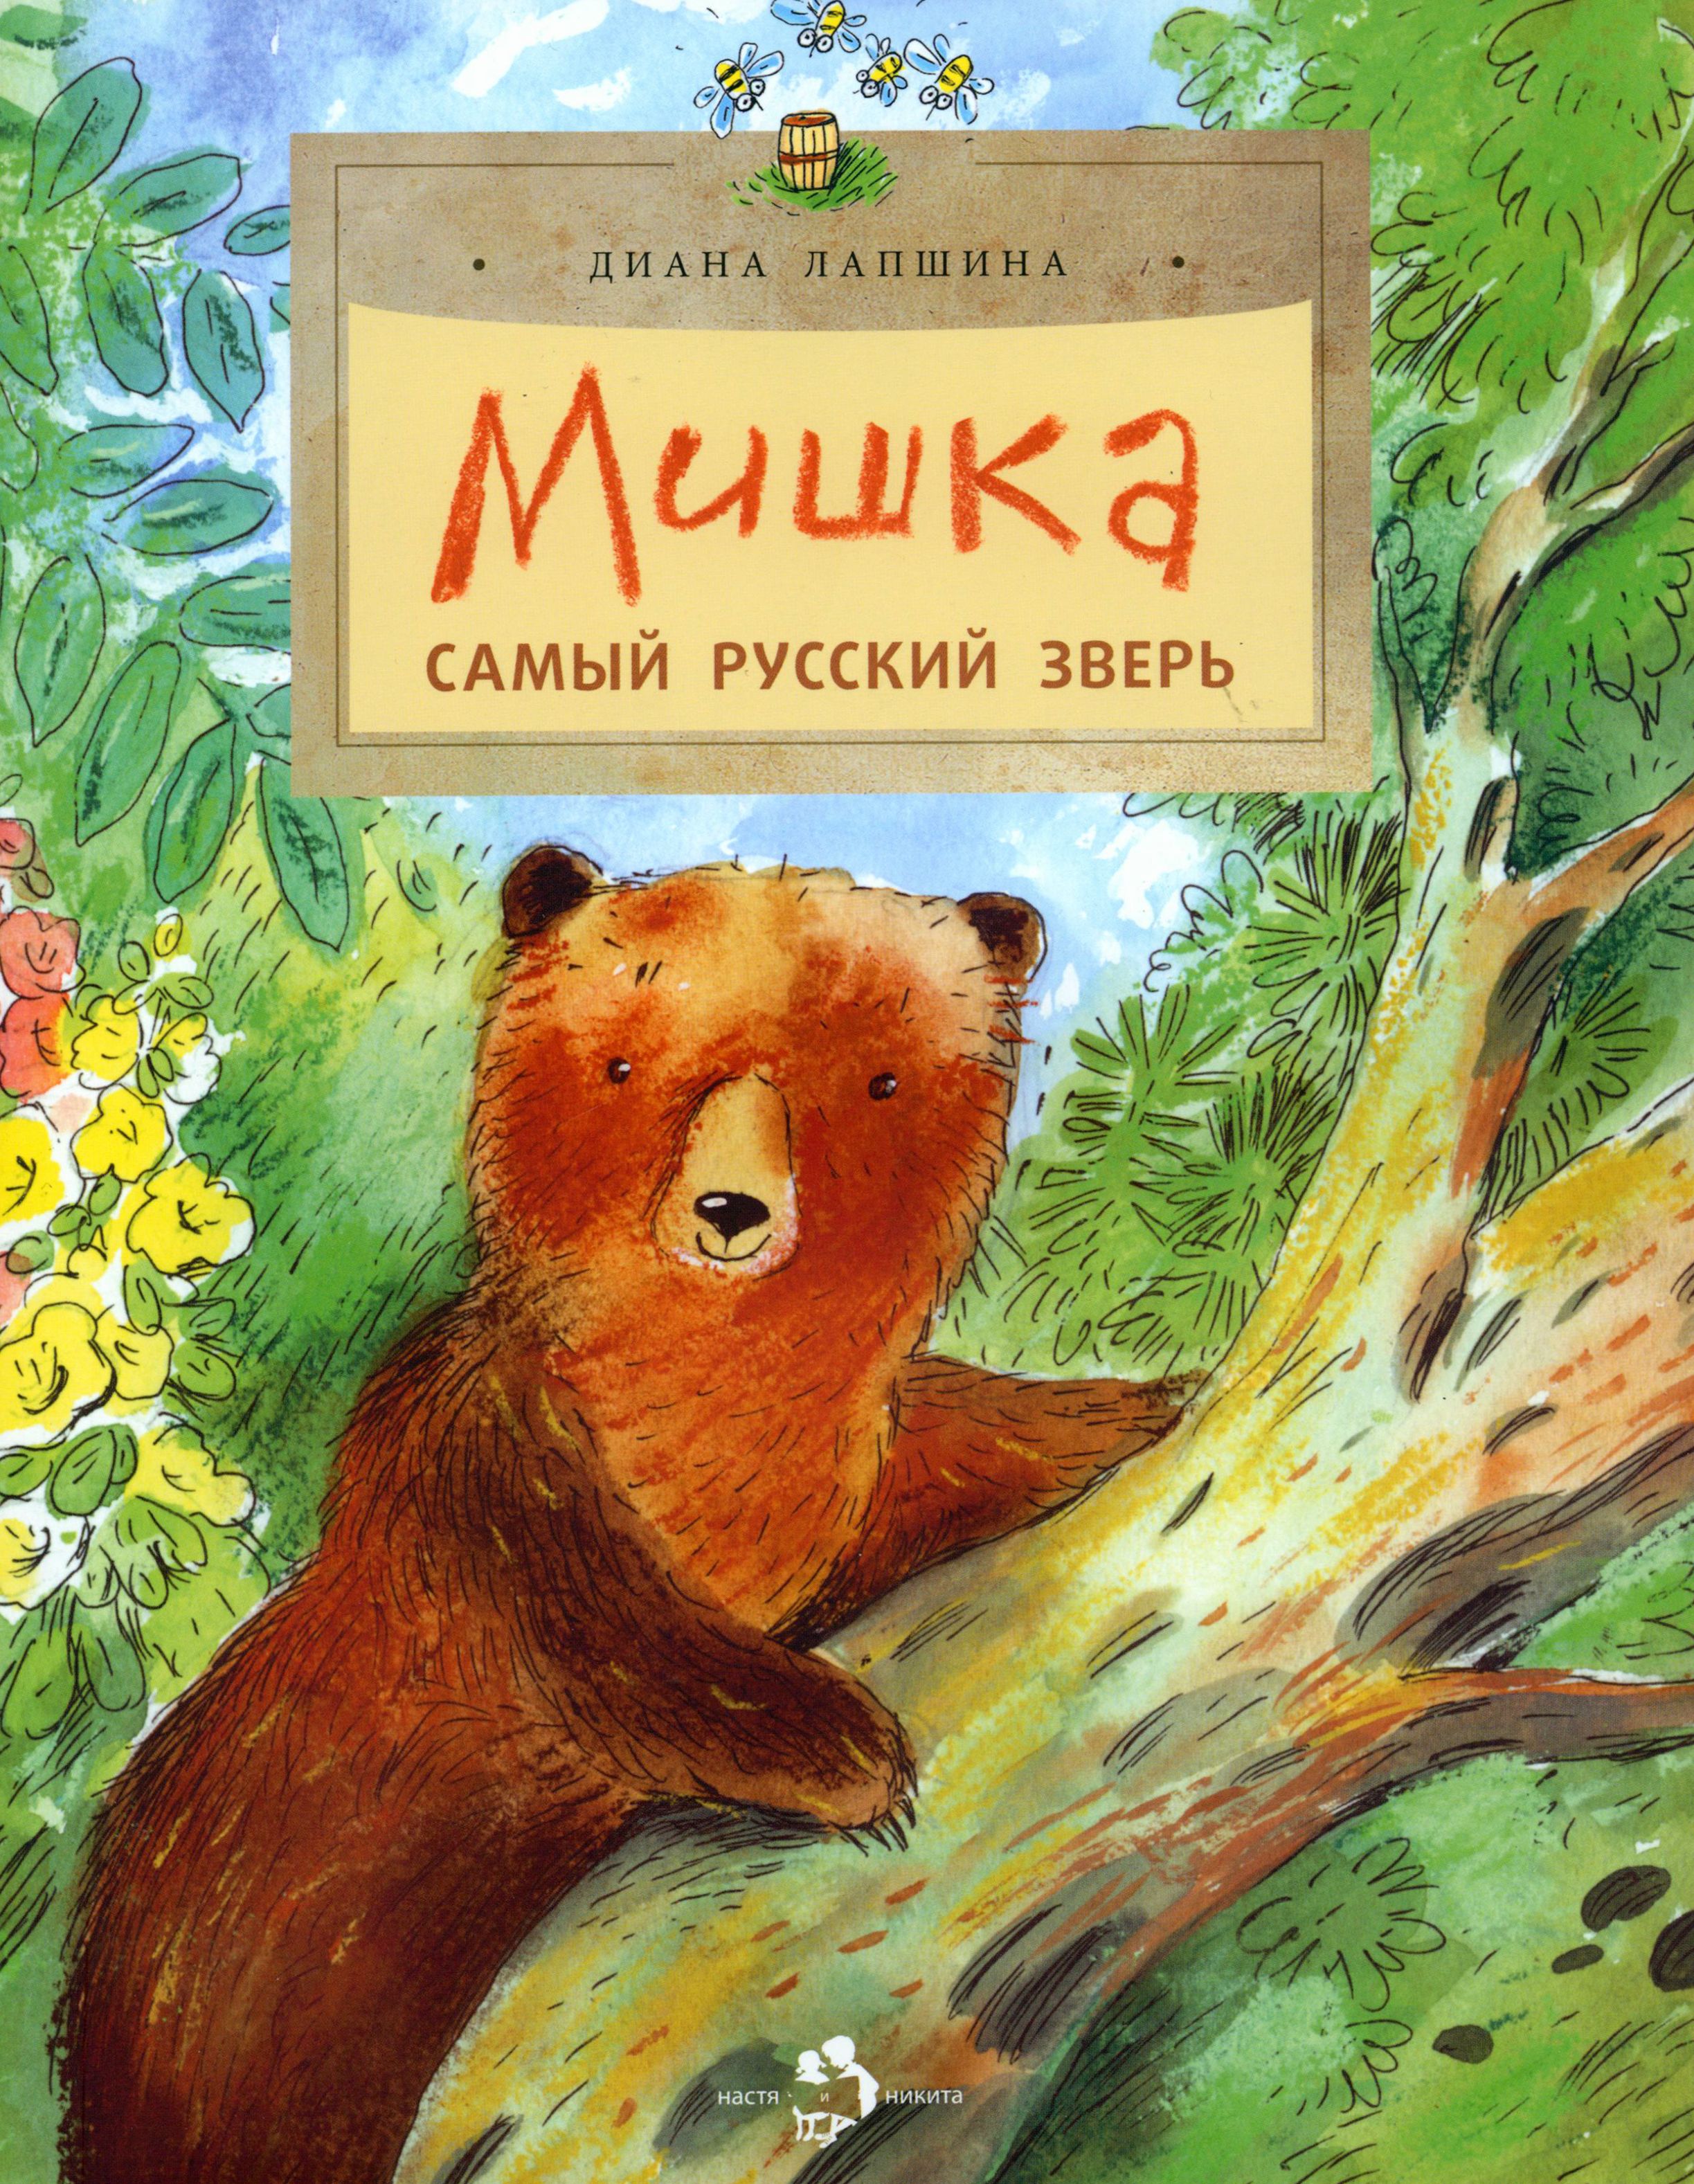 Купить книгу мишка. Медведь с книгой. Мишка самый русский зверь.